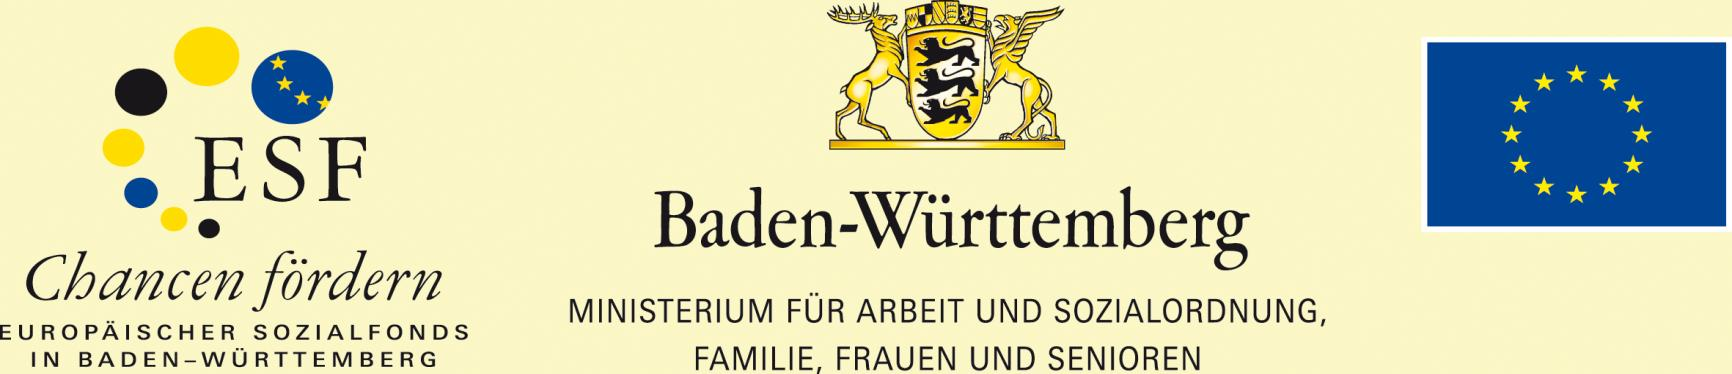 Der Europäische Sozialfonds in Baden-Württemberg 2014-2020 Gerald